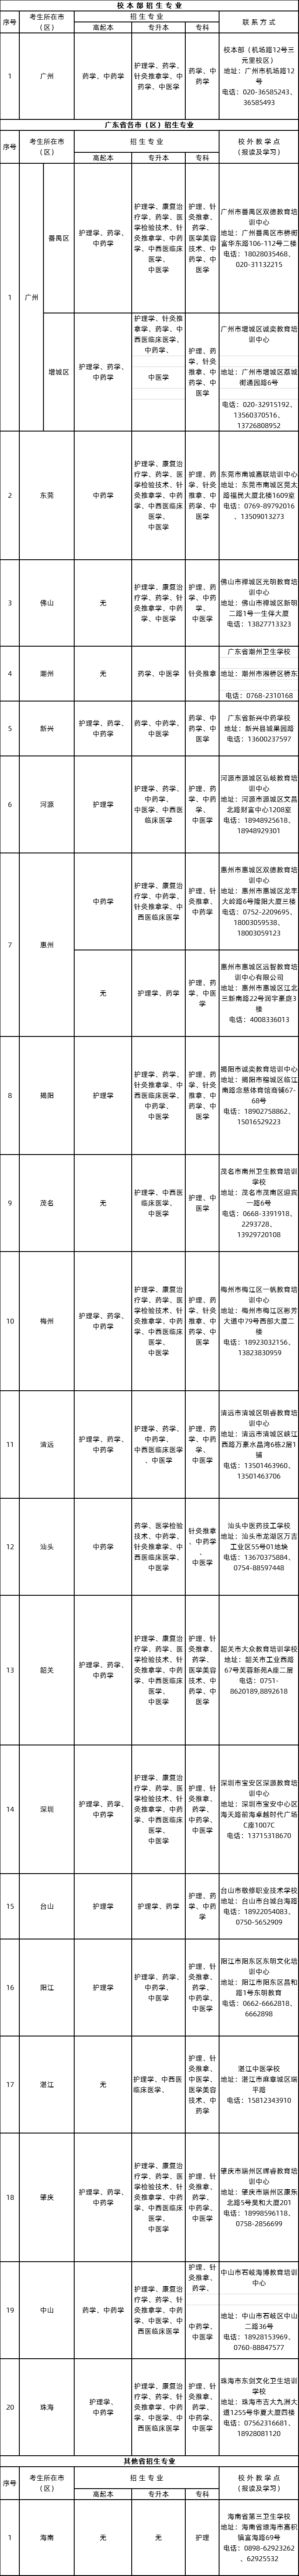 2020年广州中医药大学成人高等学历教育招生专业一览表.png